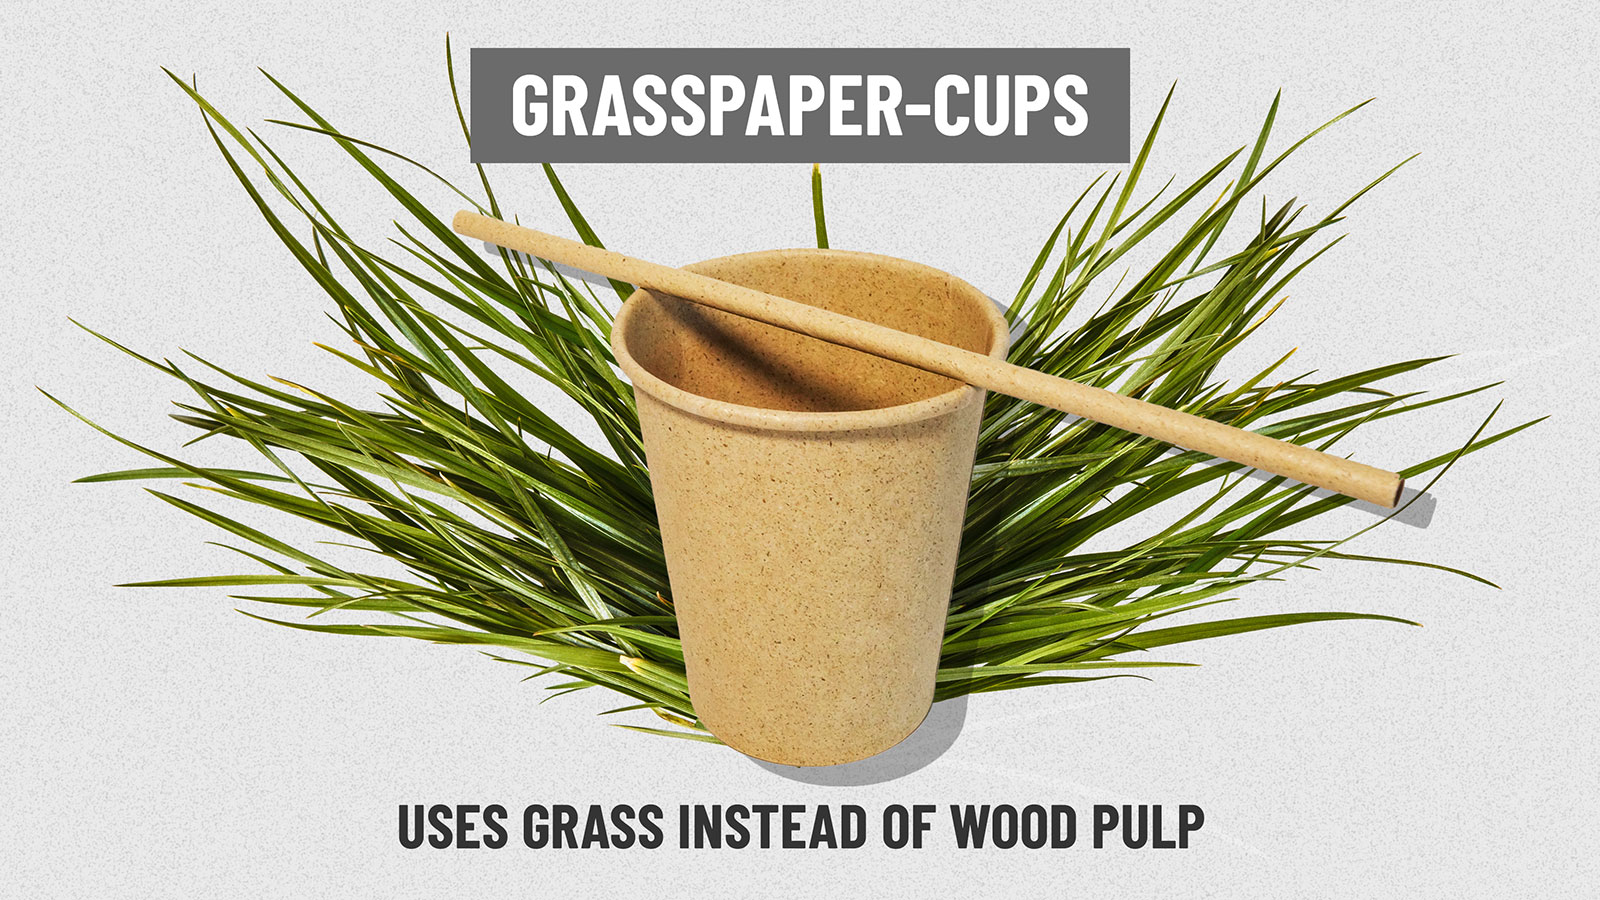 https://cdn.cnn.com/cnn/interactive/2019/02/business/starbucks-cup-problem/media/cups-centerpiece-gallery-grass.jpg